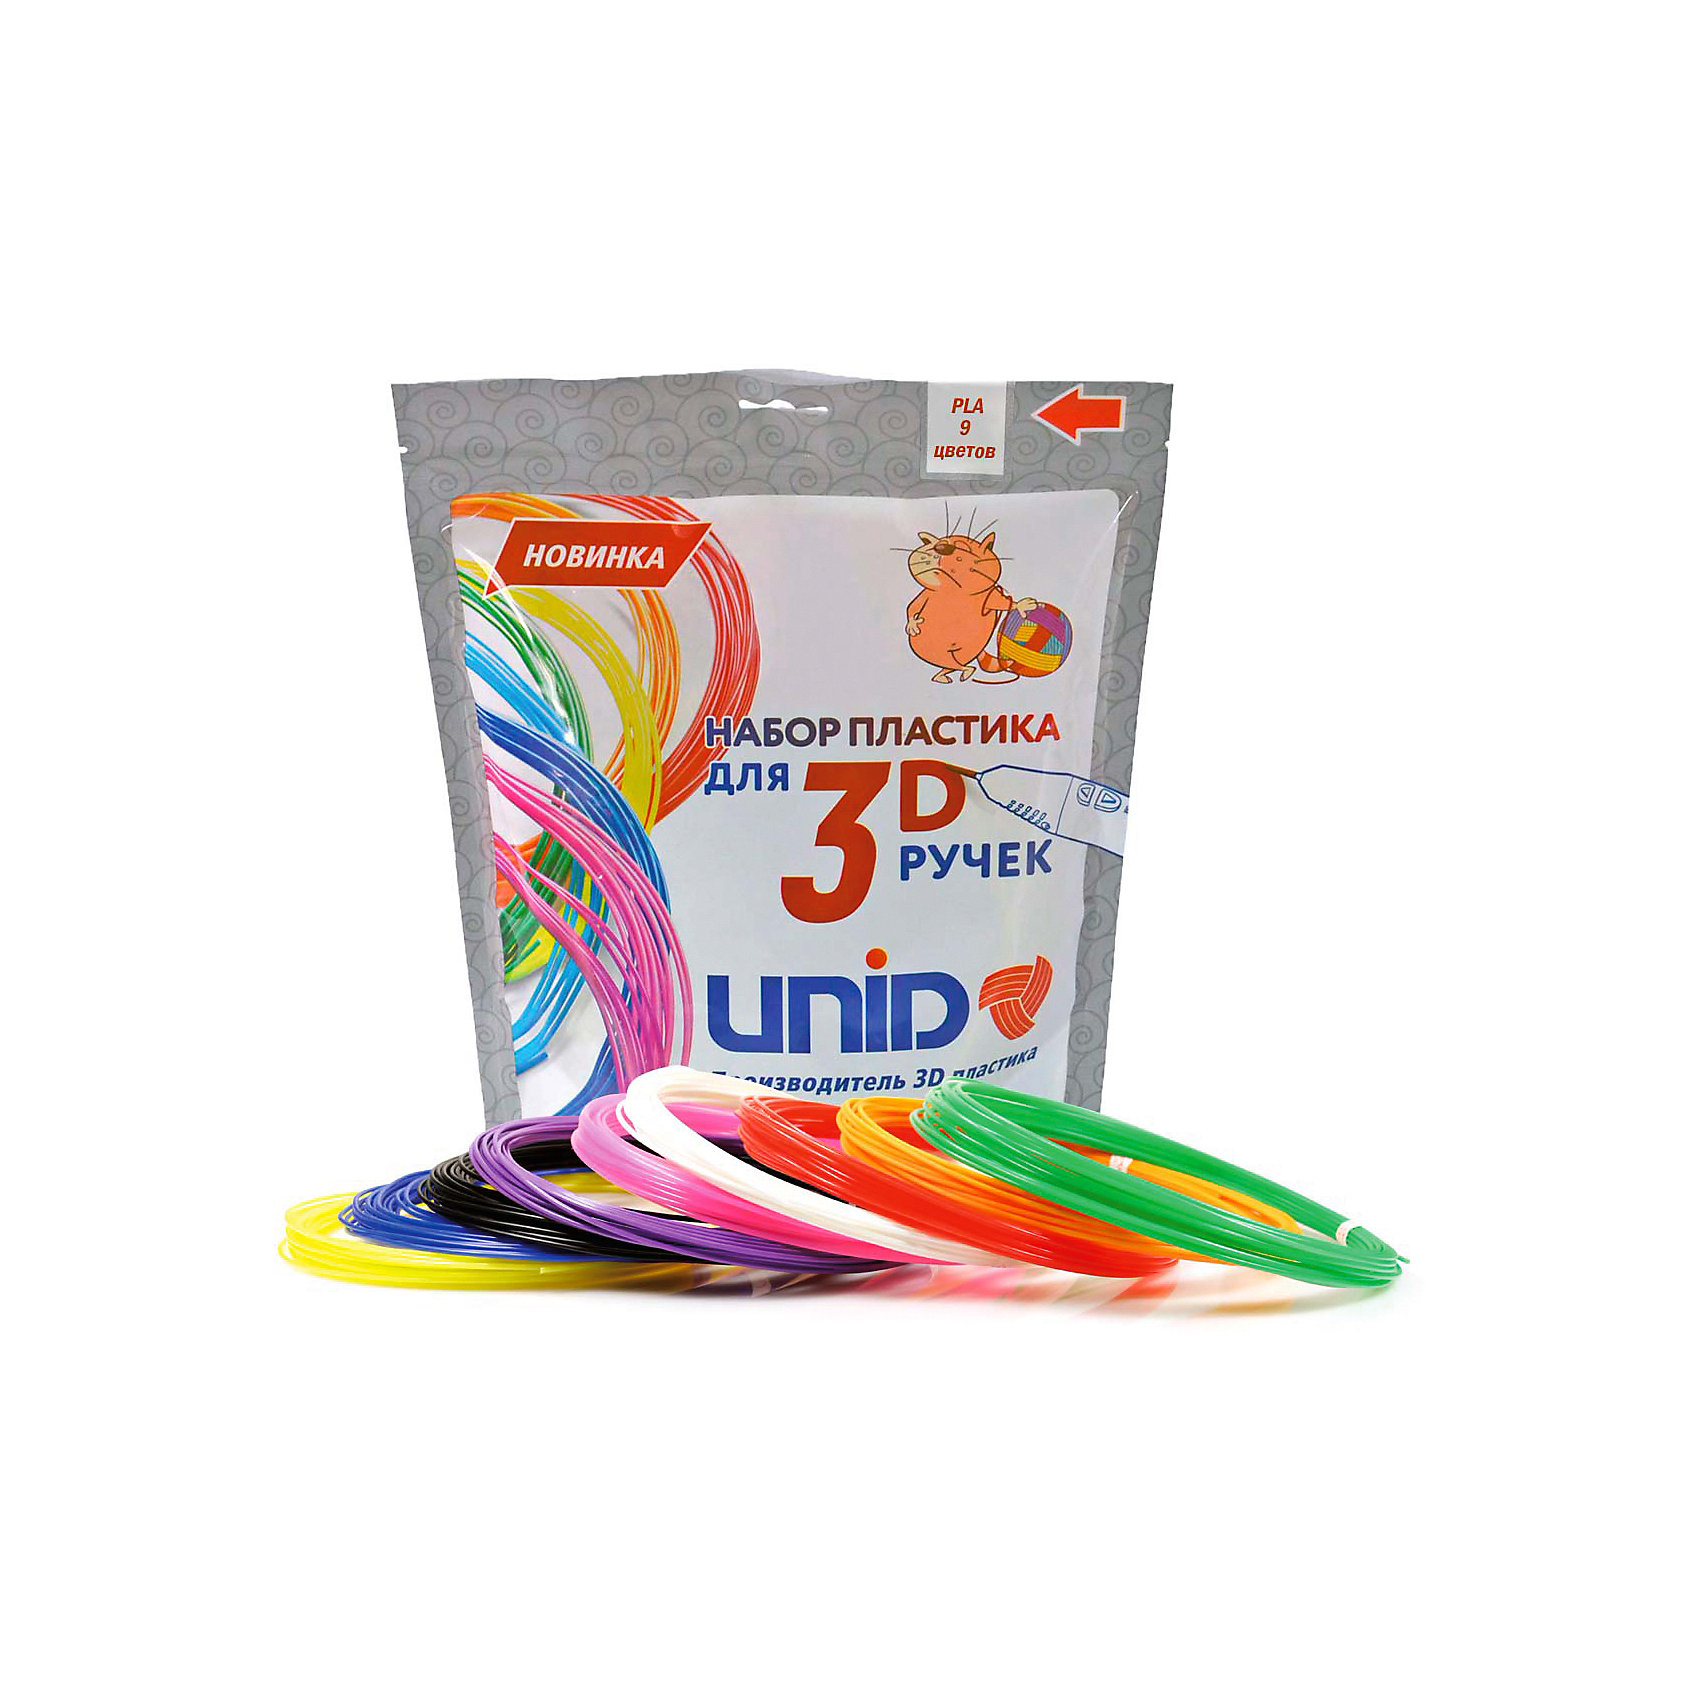 фото Набор пластика для 3D ручек Unid "PLA-9" 9 цветов, 10 м каждый